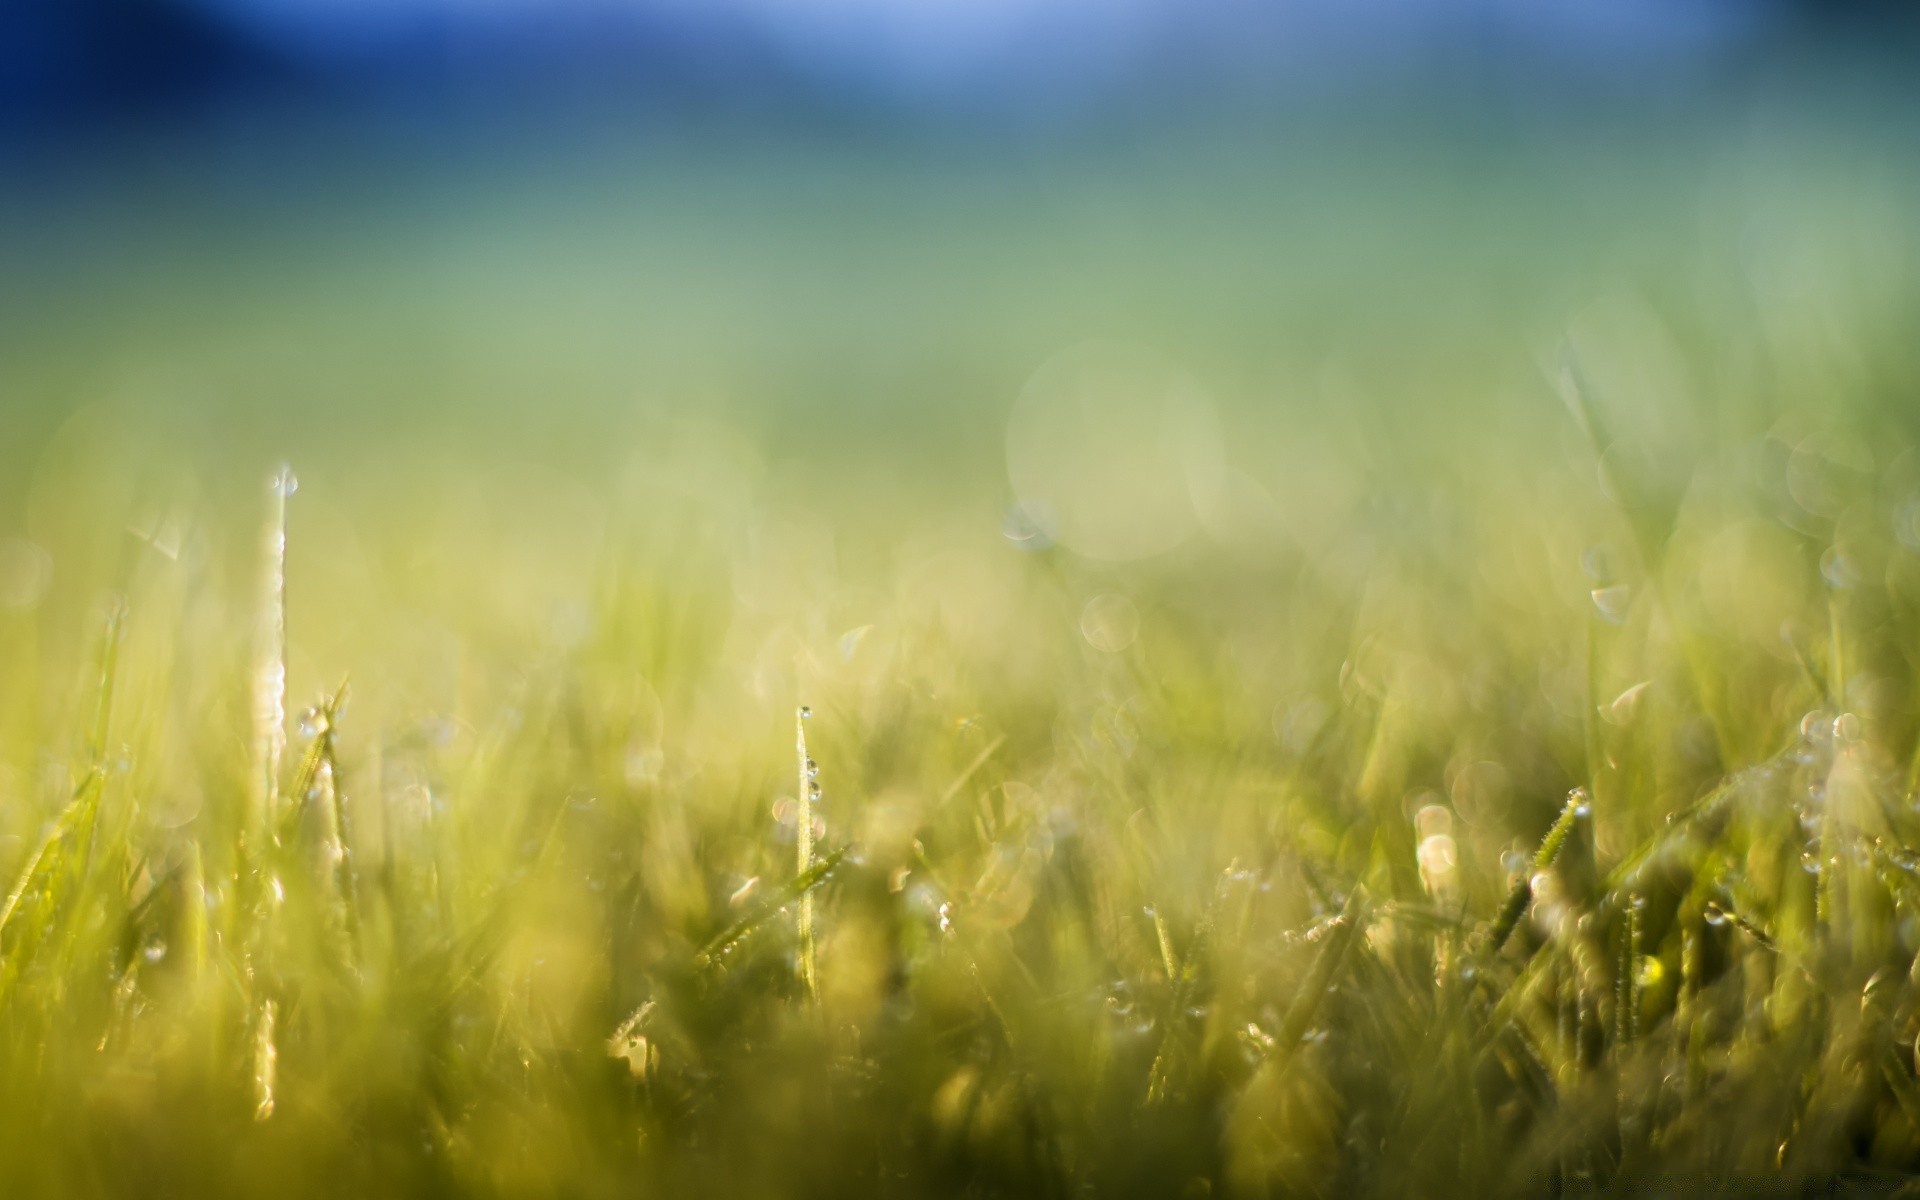 боке трава солнце поле сенокос лето природа сельских газон рост хорошую погоду пастбище рассвет флора ферма сад сельской местности лист пейзаж пышные страна